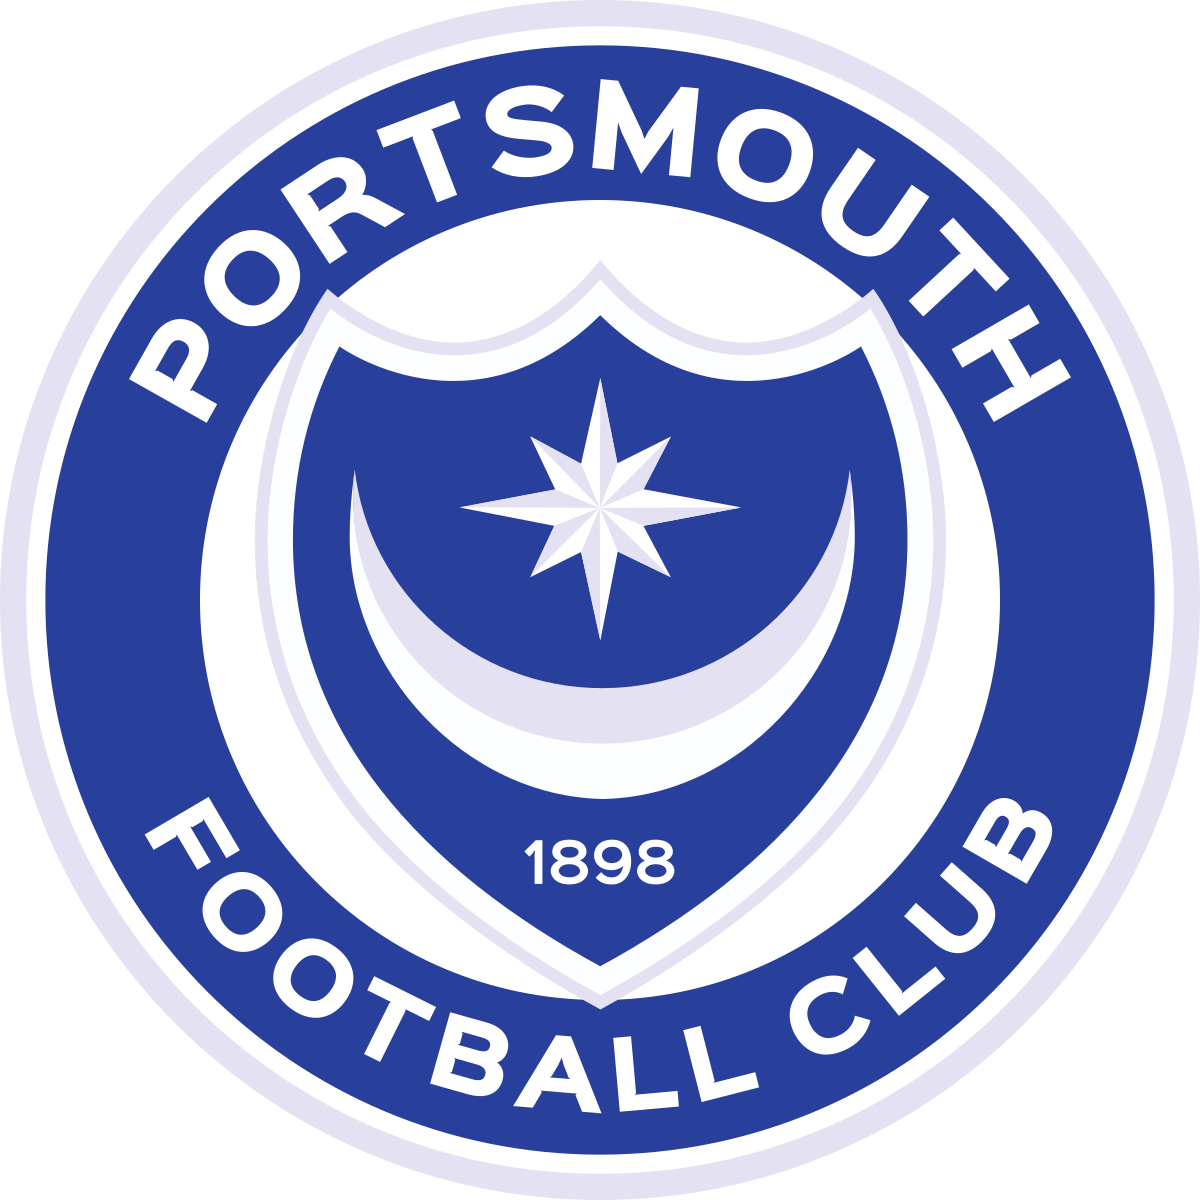 1200px-Portsmouth_FC_logo